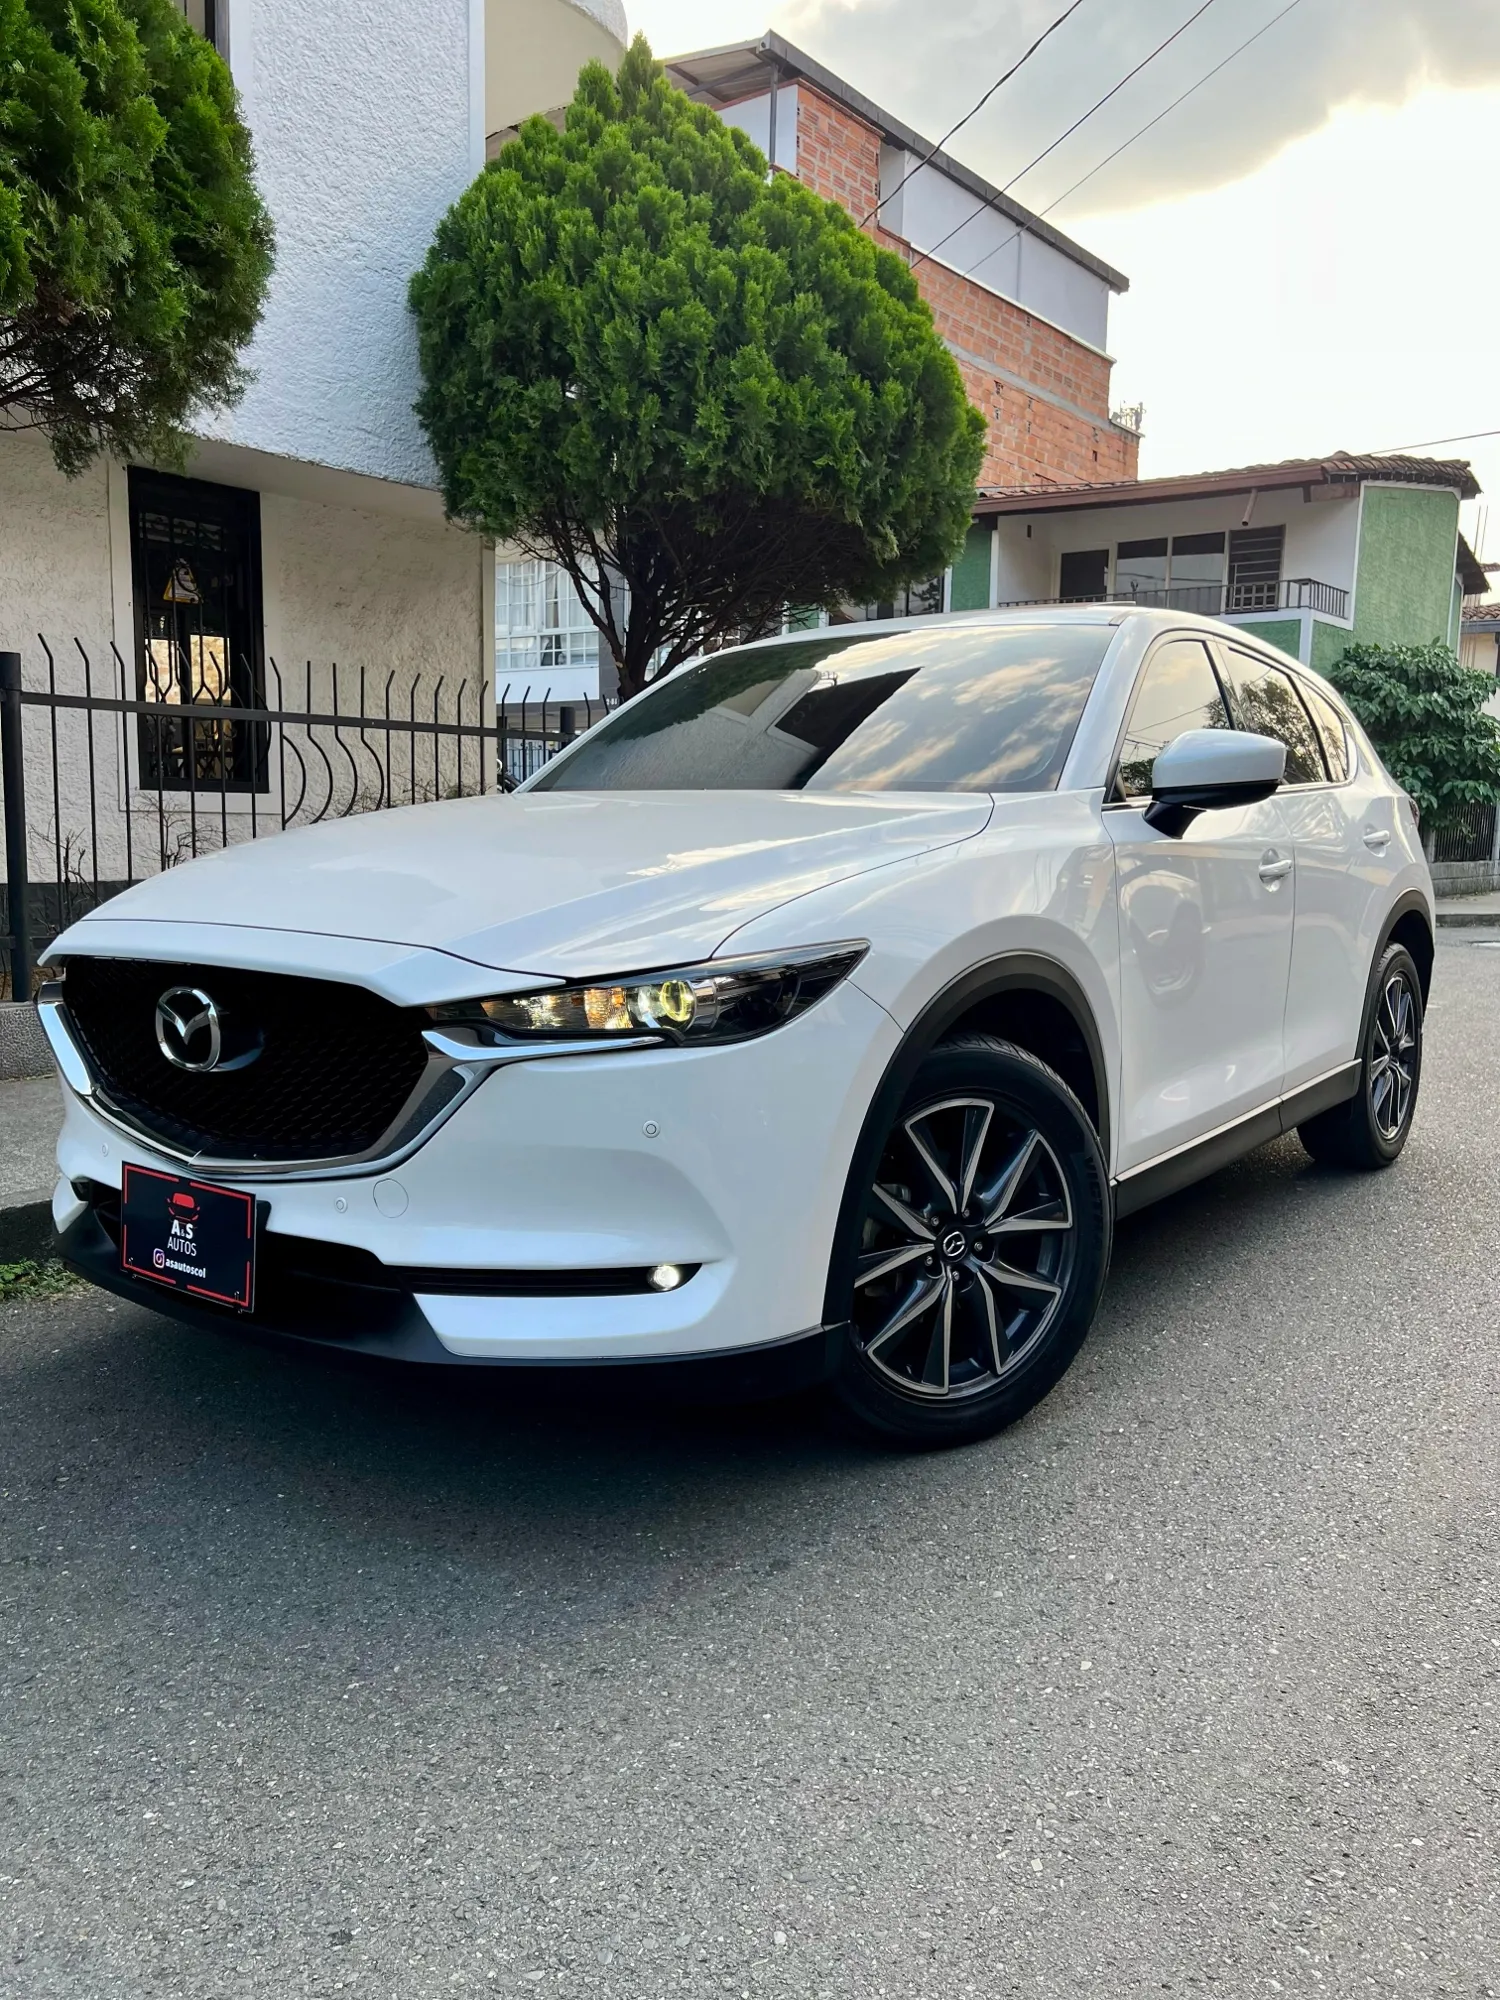 Vencambio Mazda CX5 2019 Grand Touring 4x4